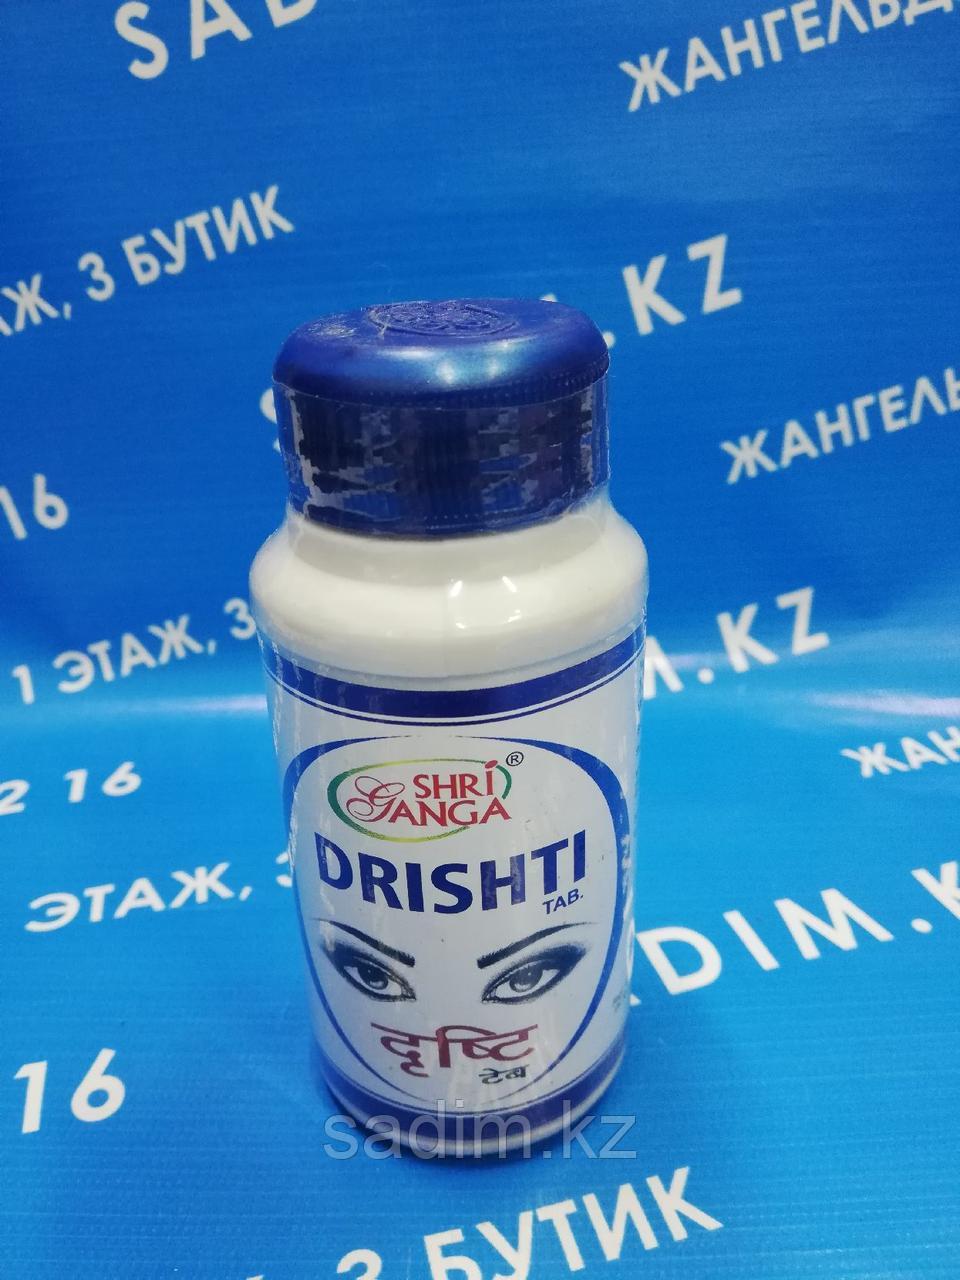 Дришти Витамины для глаз (Drishti SHRI GANGA), 120 таб.